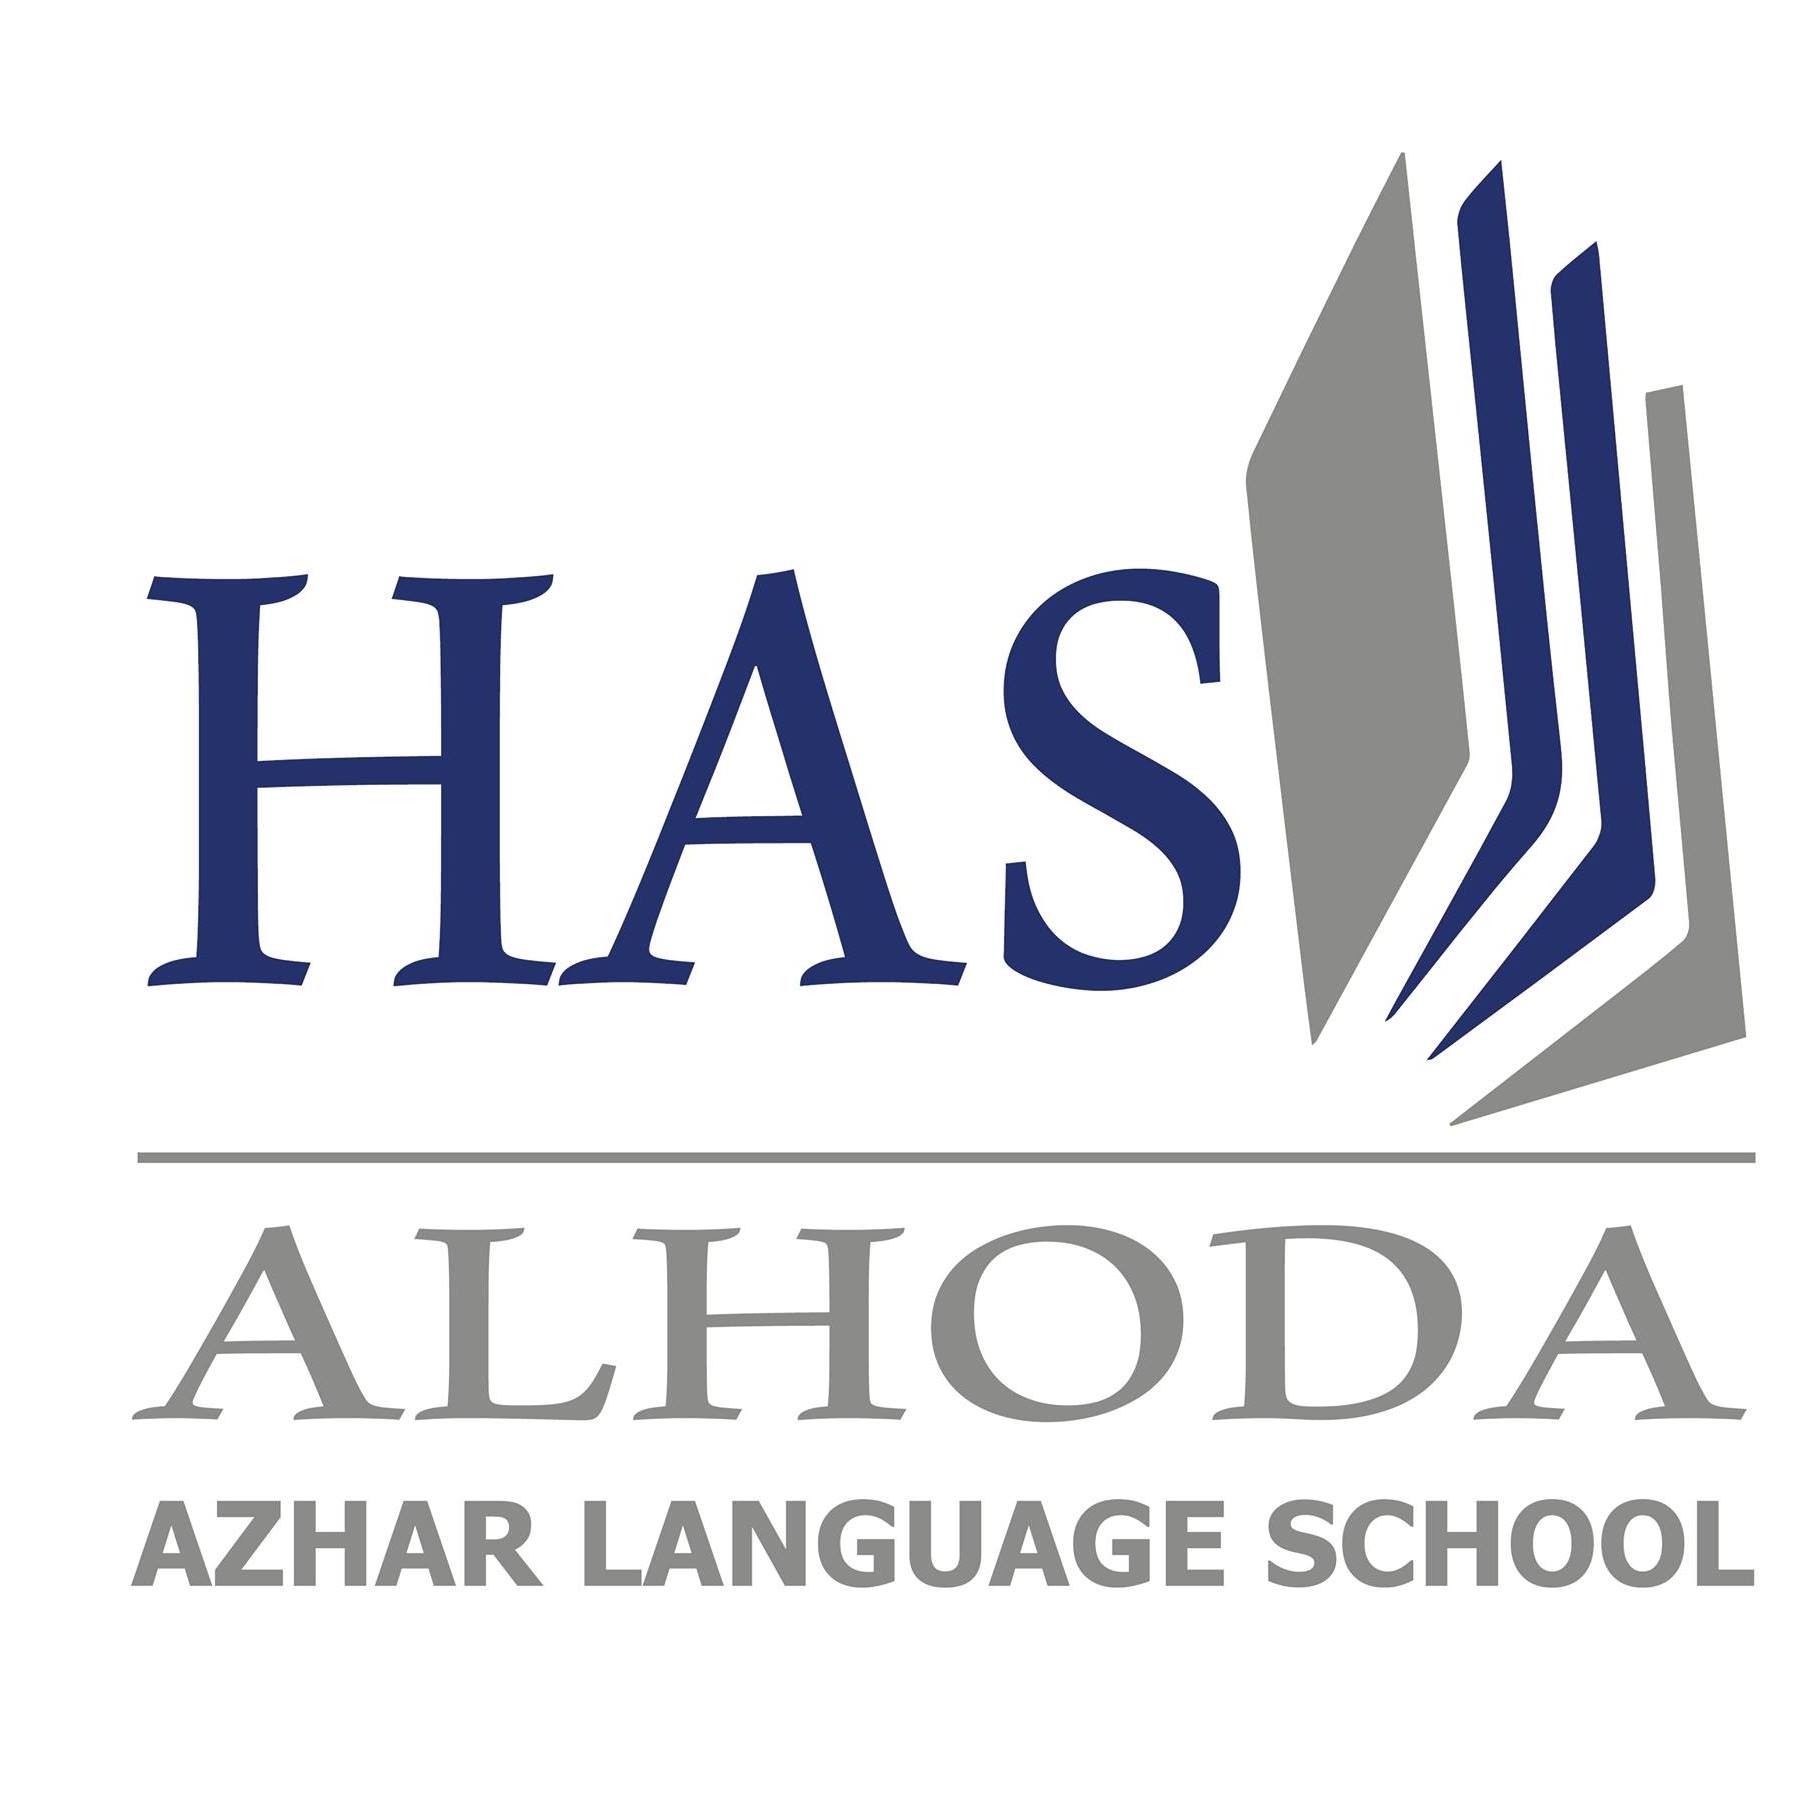 Al Hoda Azhar Language School